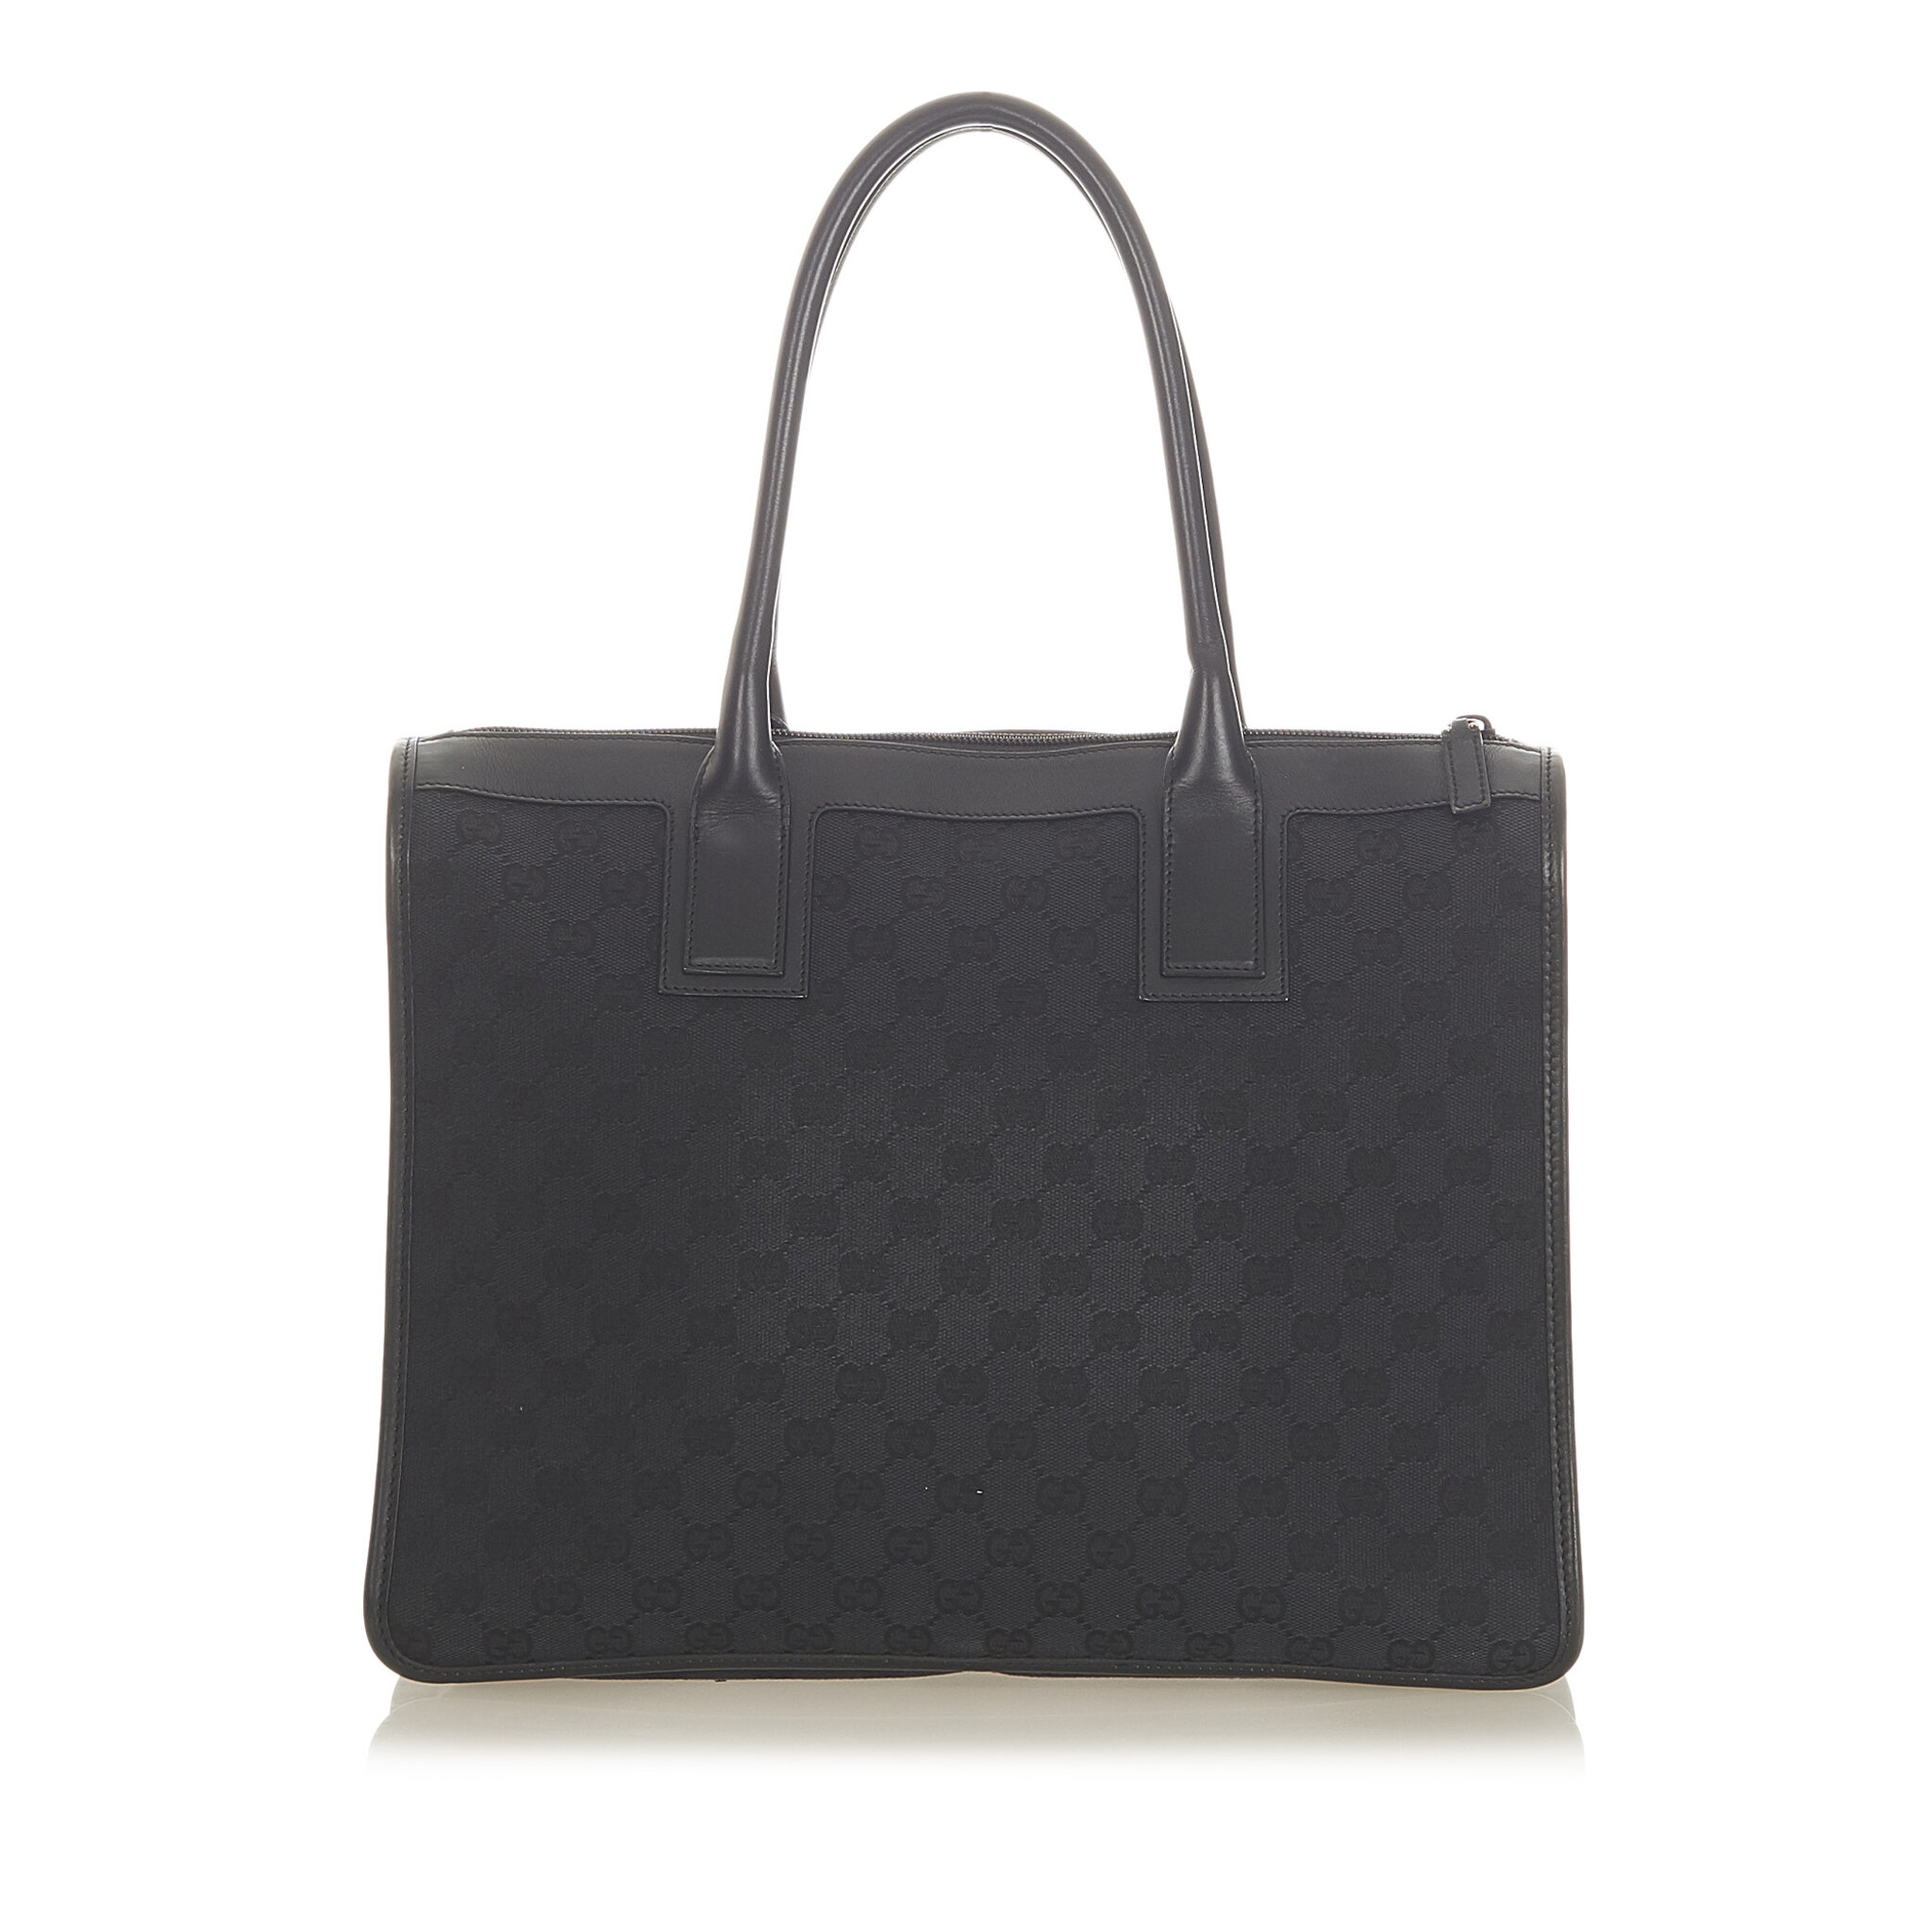 Gucci Gg Canvas Tote Bag, black